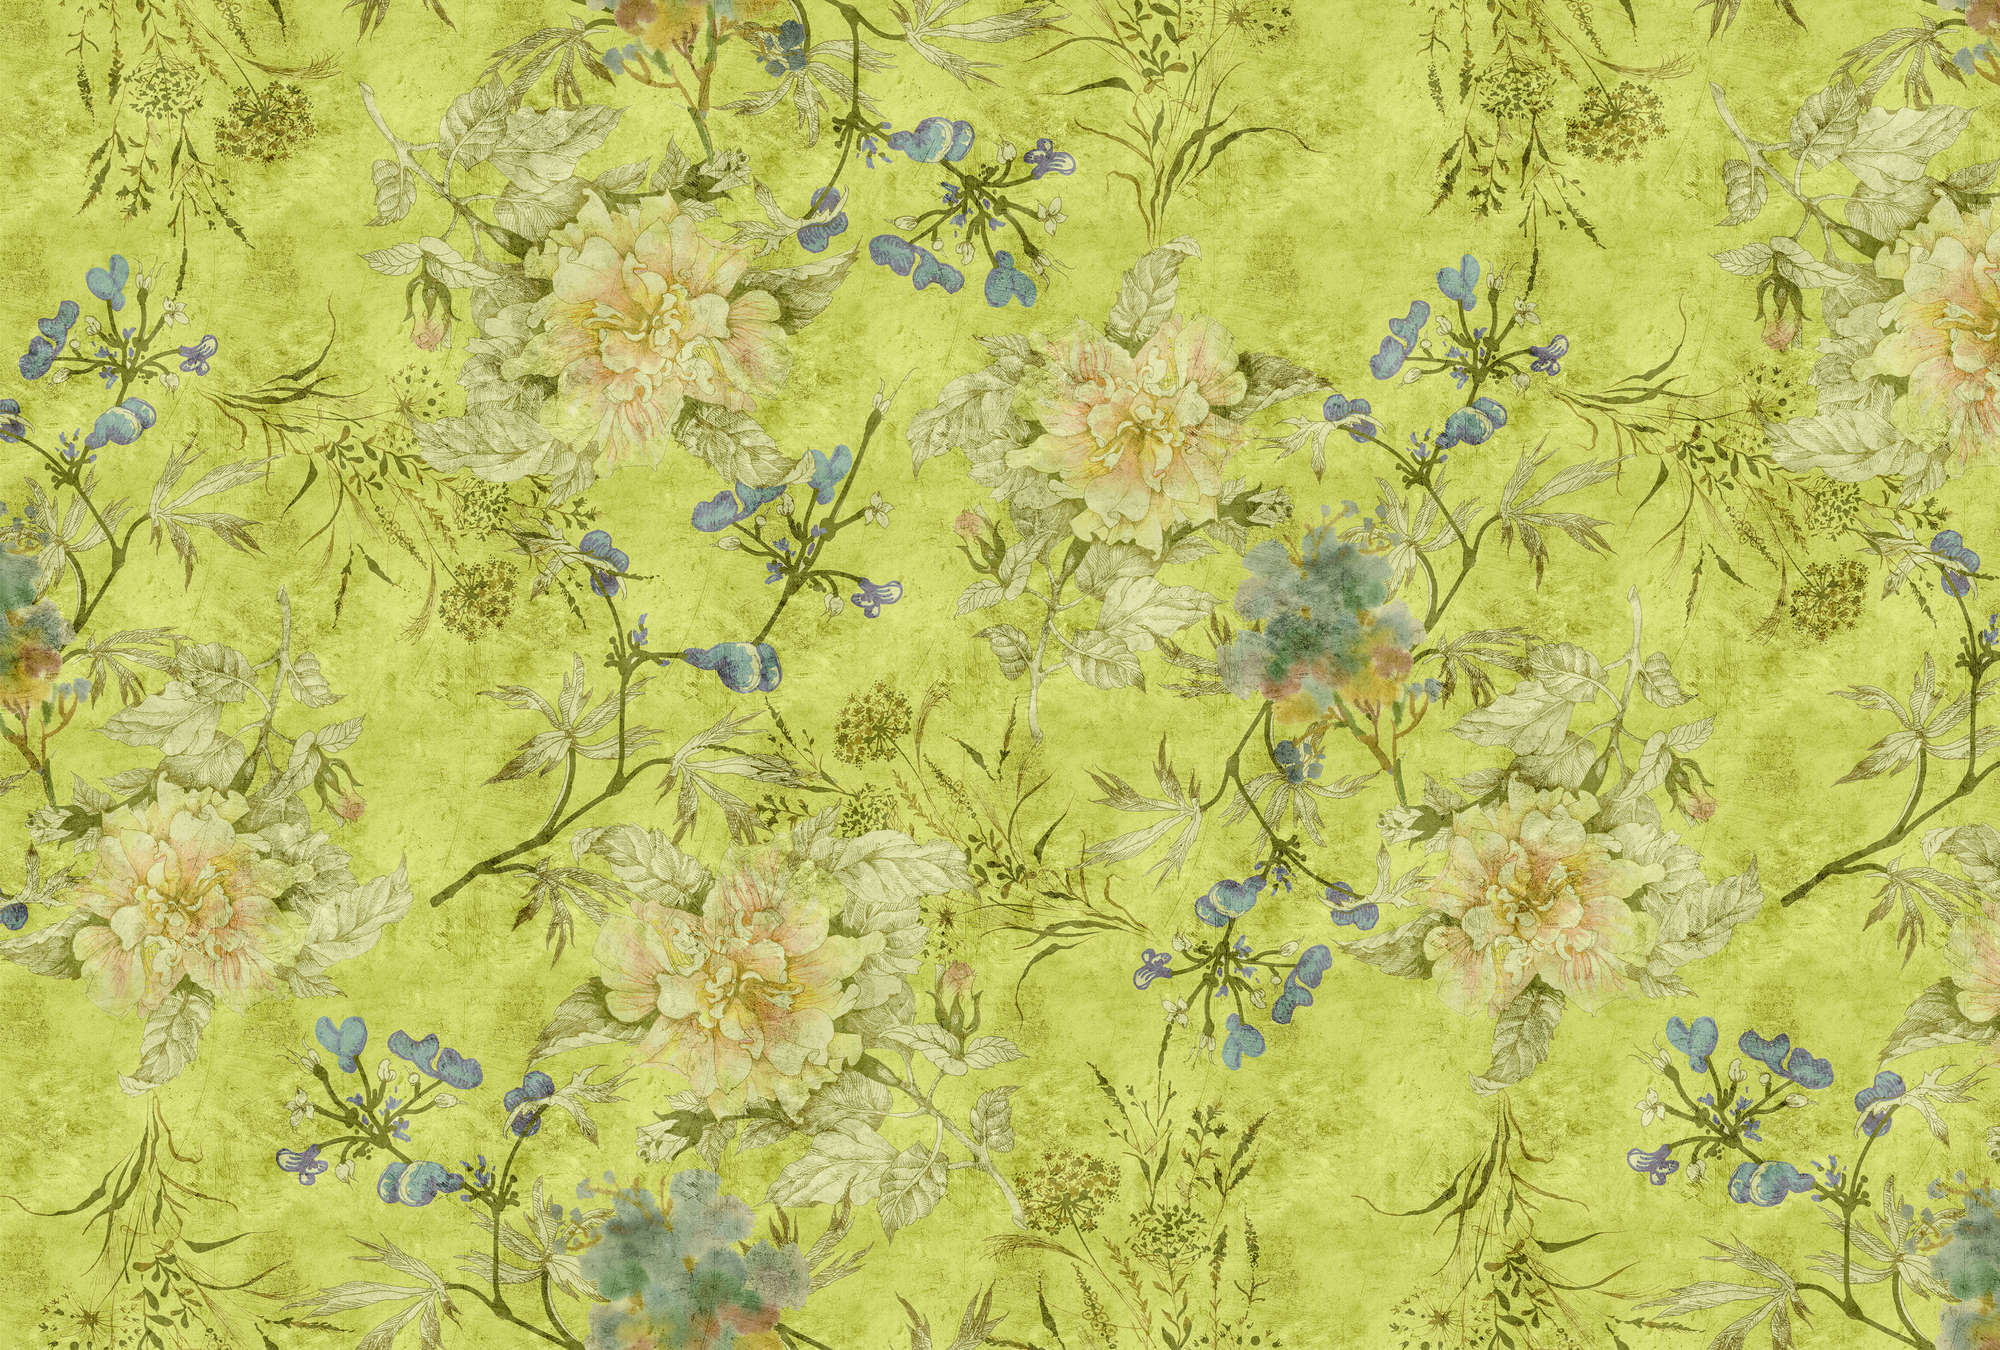             Tenderblossom 1 - Papel pintado fotográfico con zarcillos de flores modernas en una estructura rayada - Verde | Tejido no tejido liso mate
        